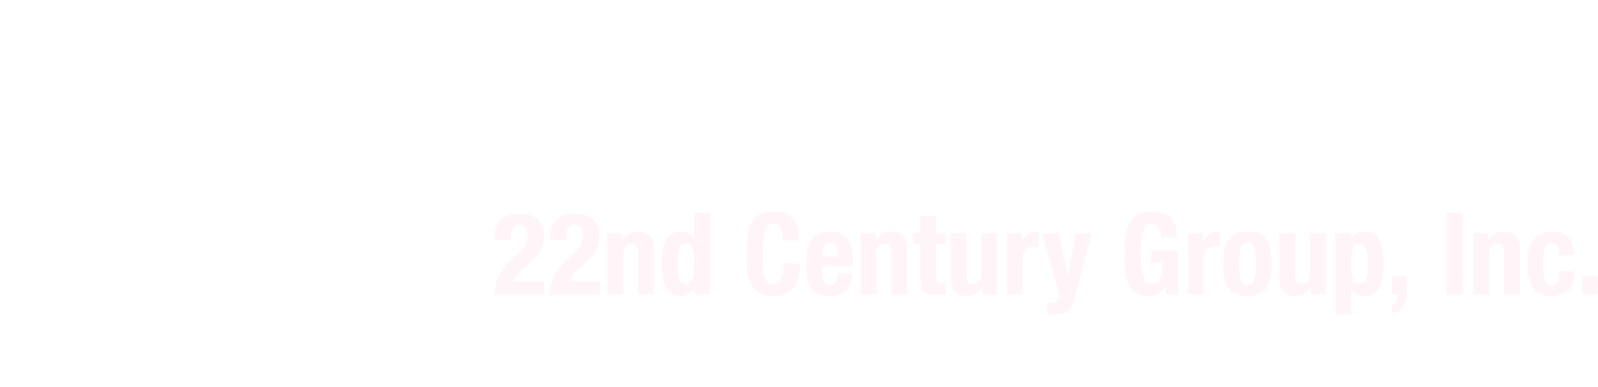 22nd Century Group
 Logo groß für dunkle Hintergründe (transparentes PNG)